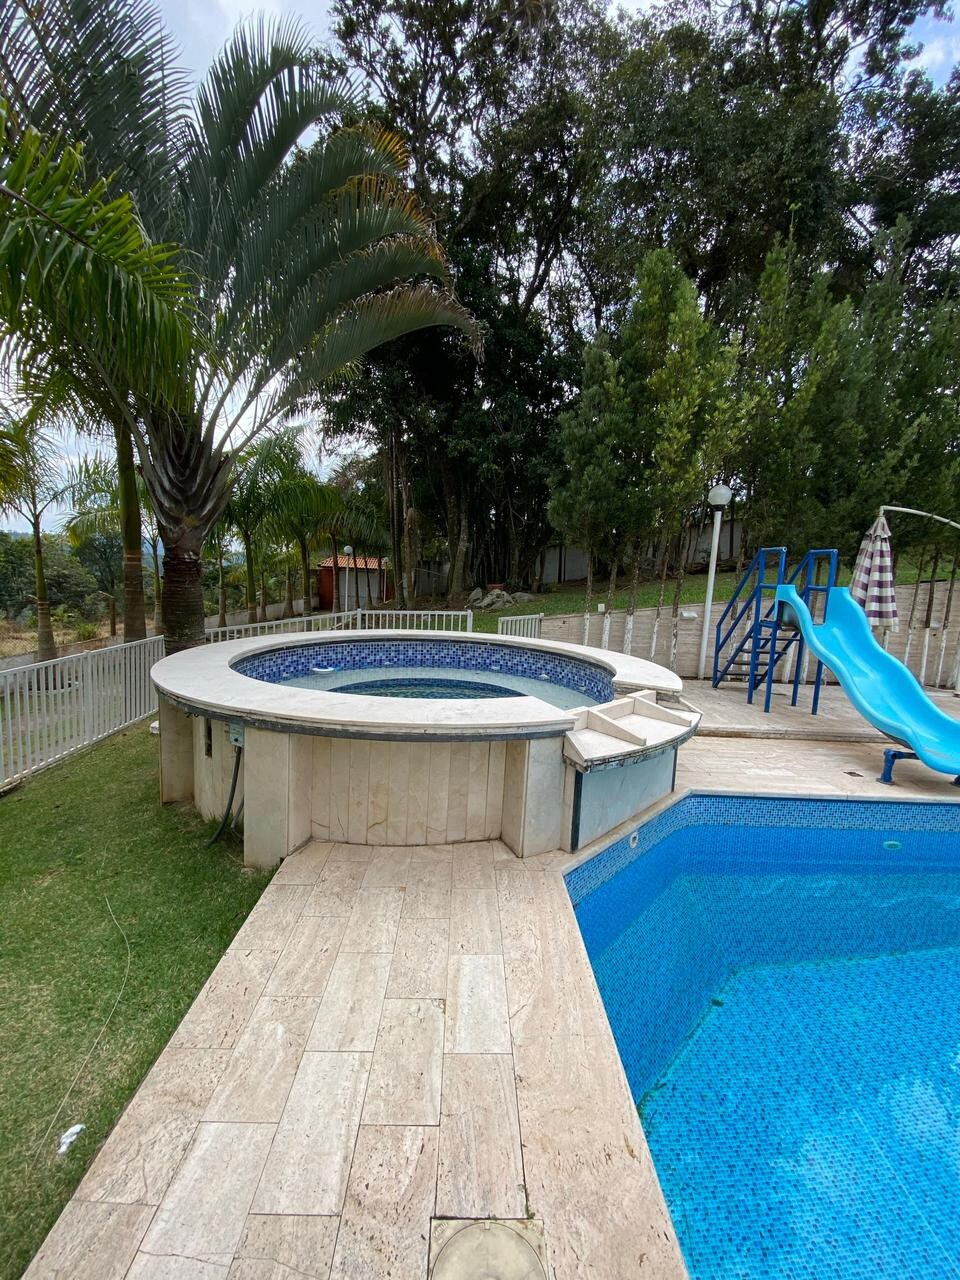 Chácara ampla com piscina confortável